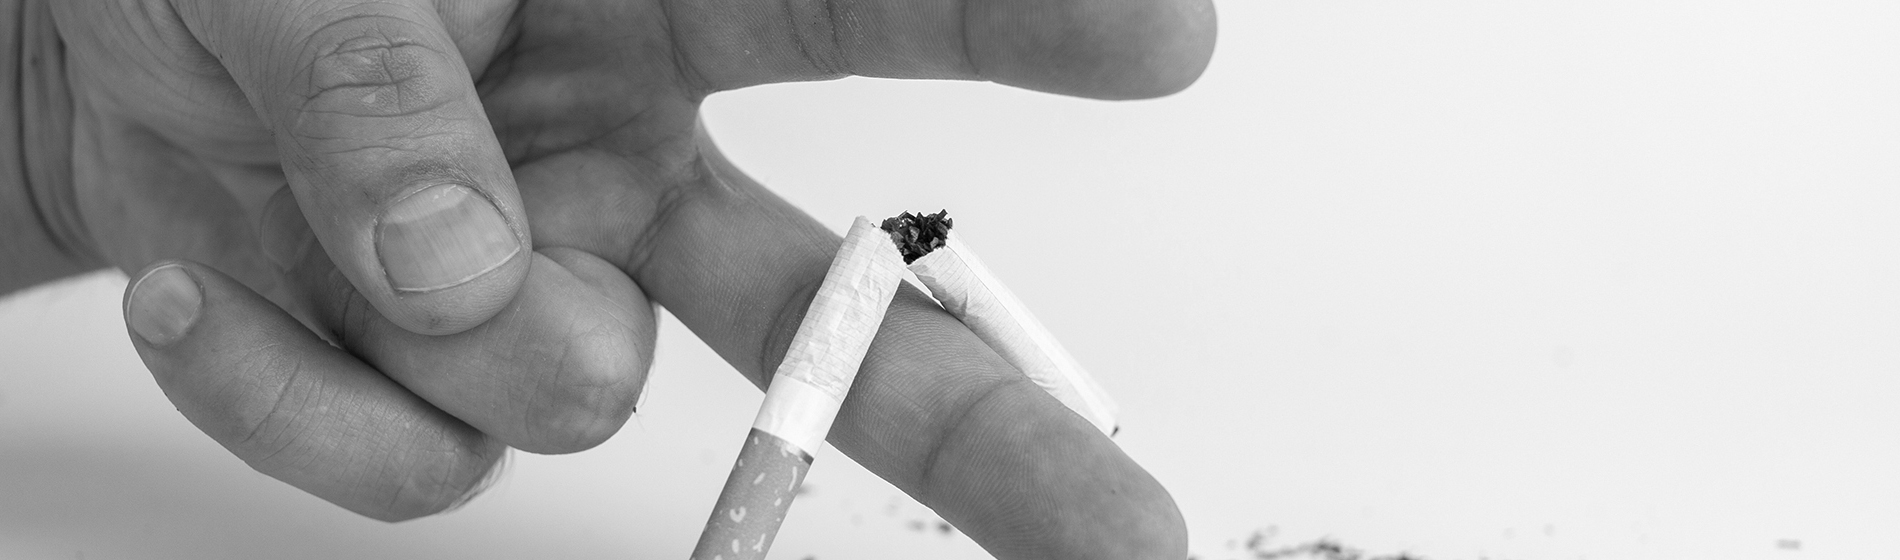 Sevrage arret tabac